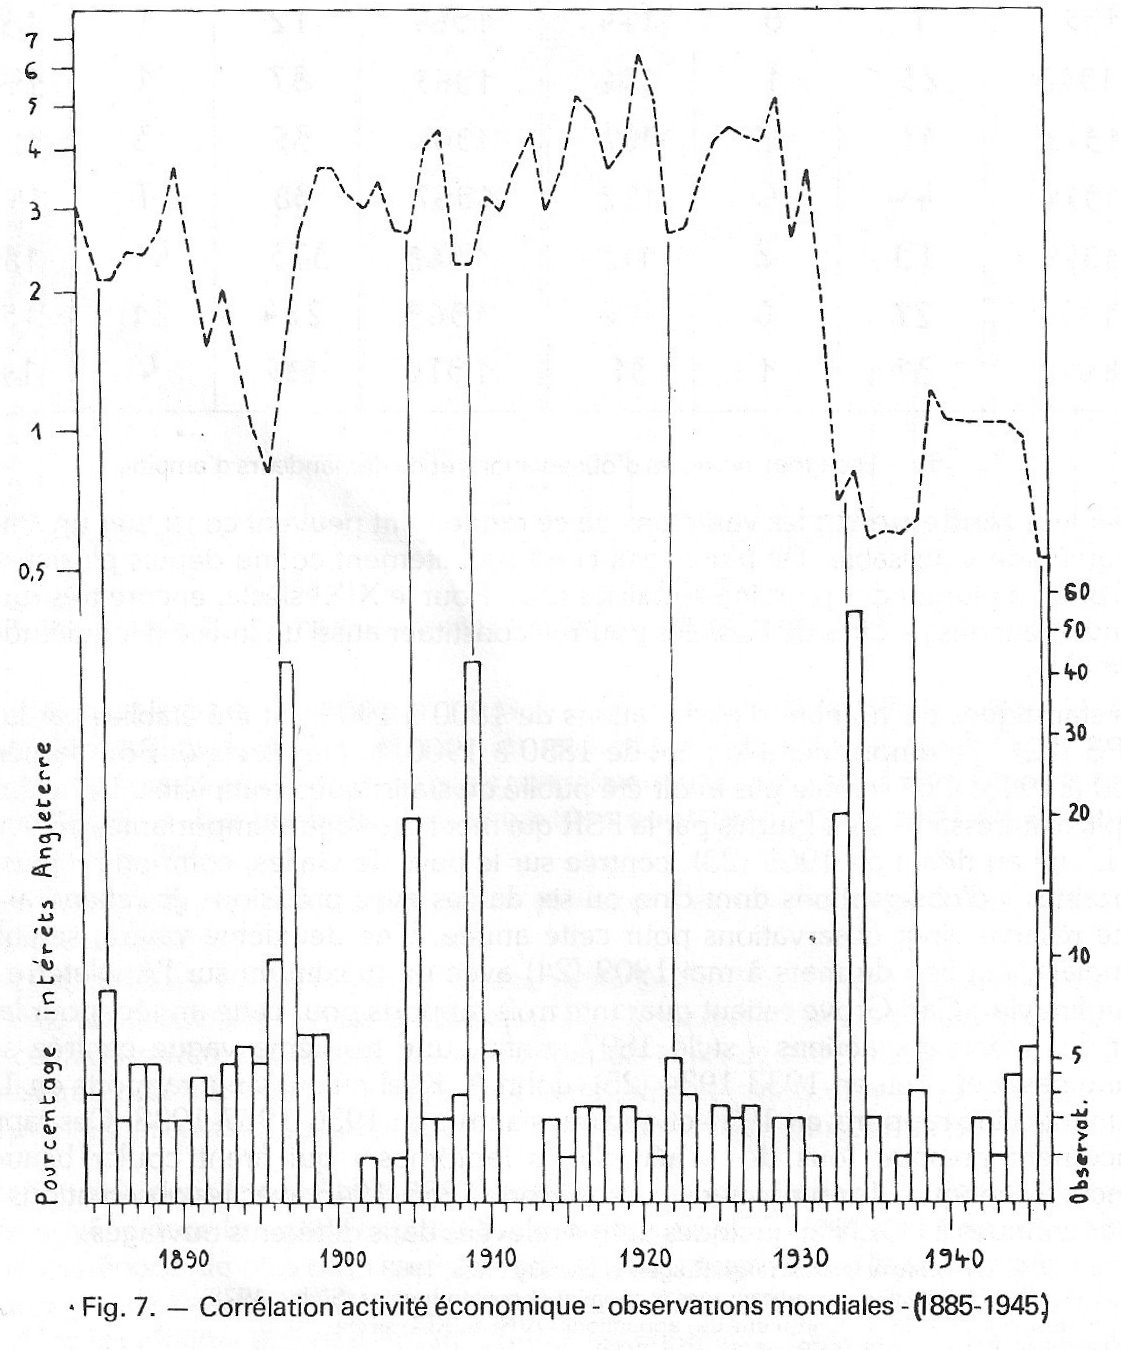 Fig. 7 - Corrélation activité économique - observations mondiales (1885-1945)